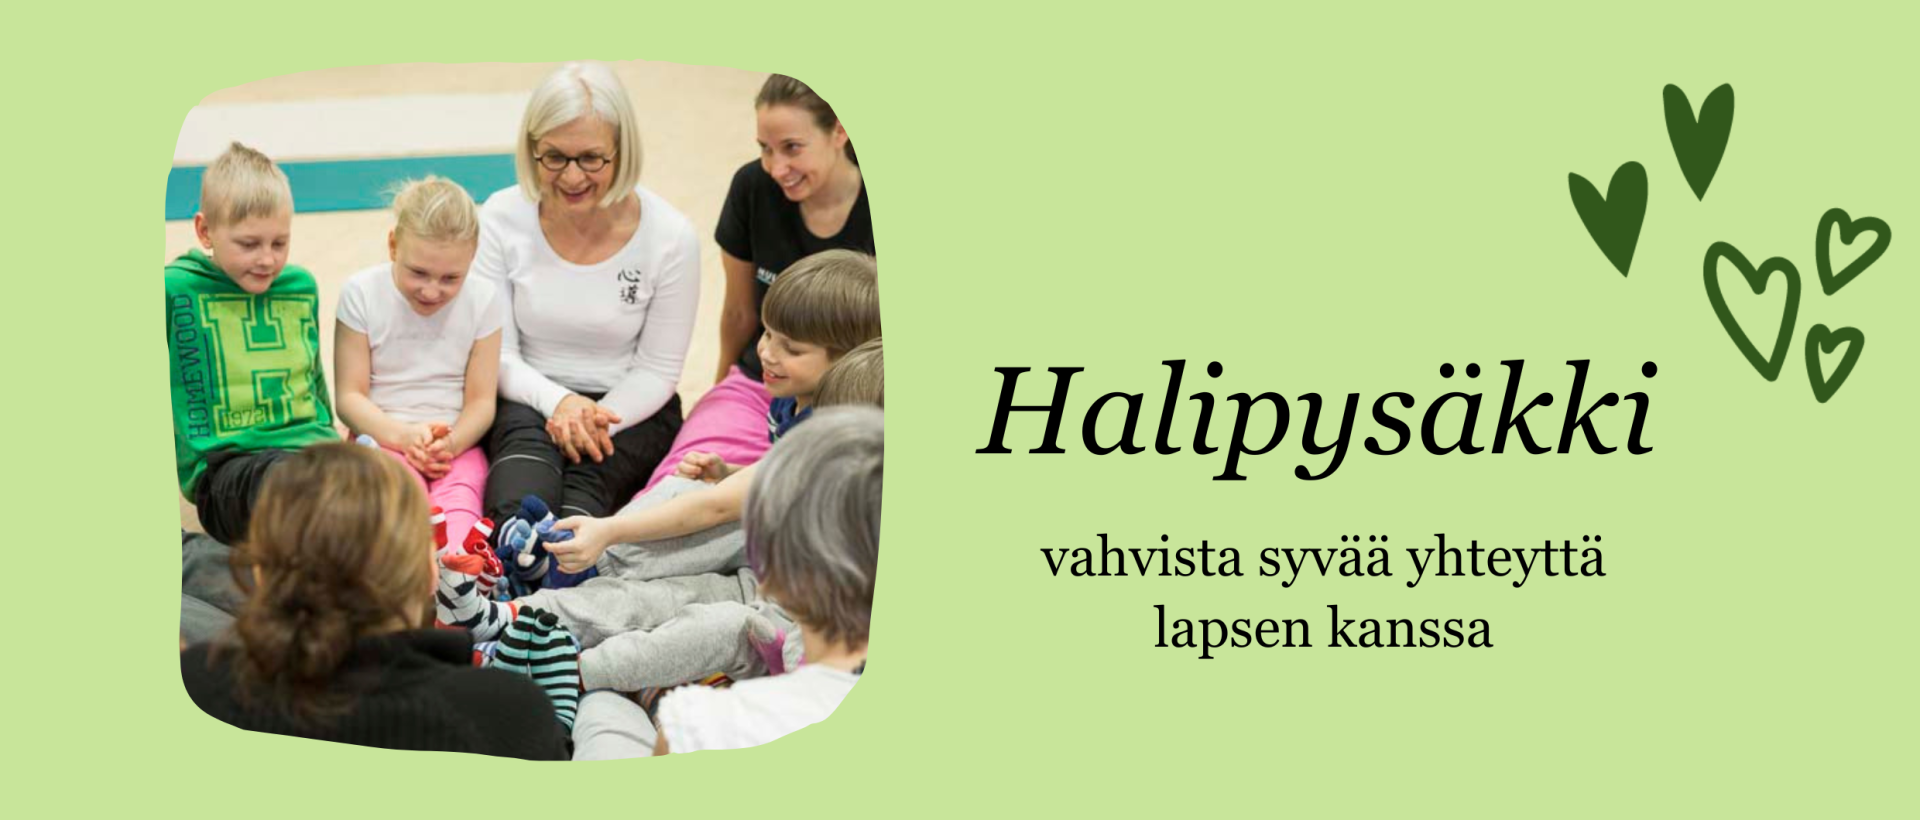 Teksti Halipysäkki - vahvista syvää yhteyttä lapsen kanssa. Vihreällä pohjalla lapsia piirissä äitiensä sylissä